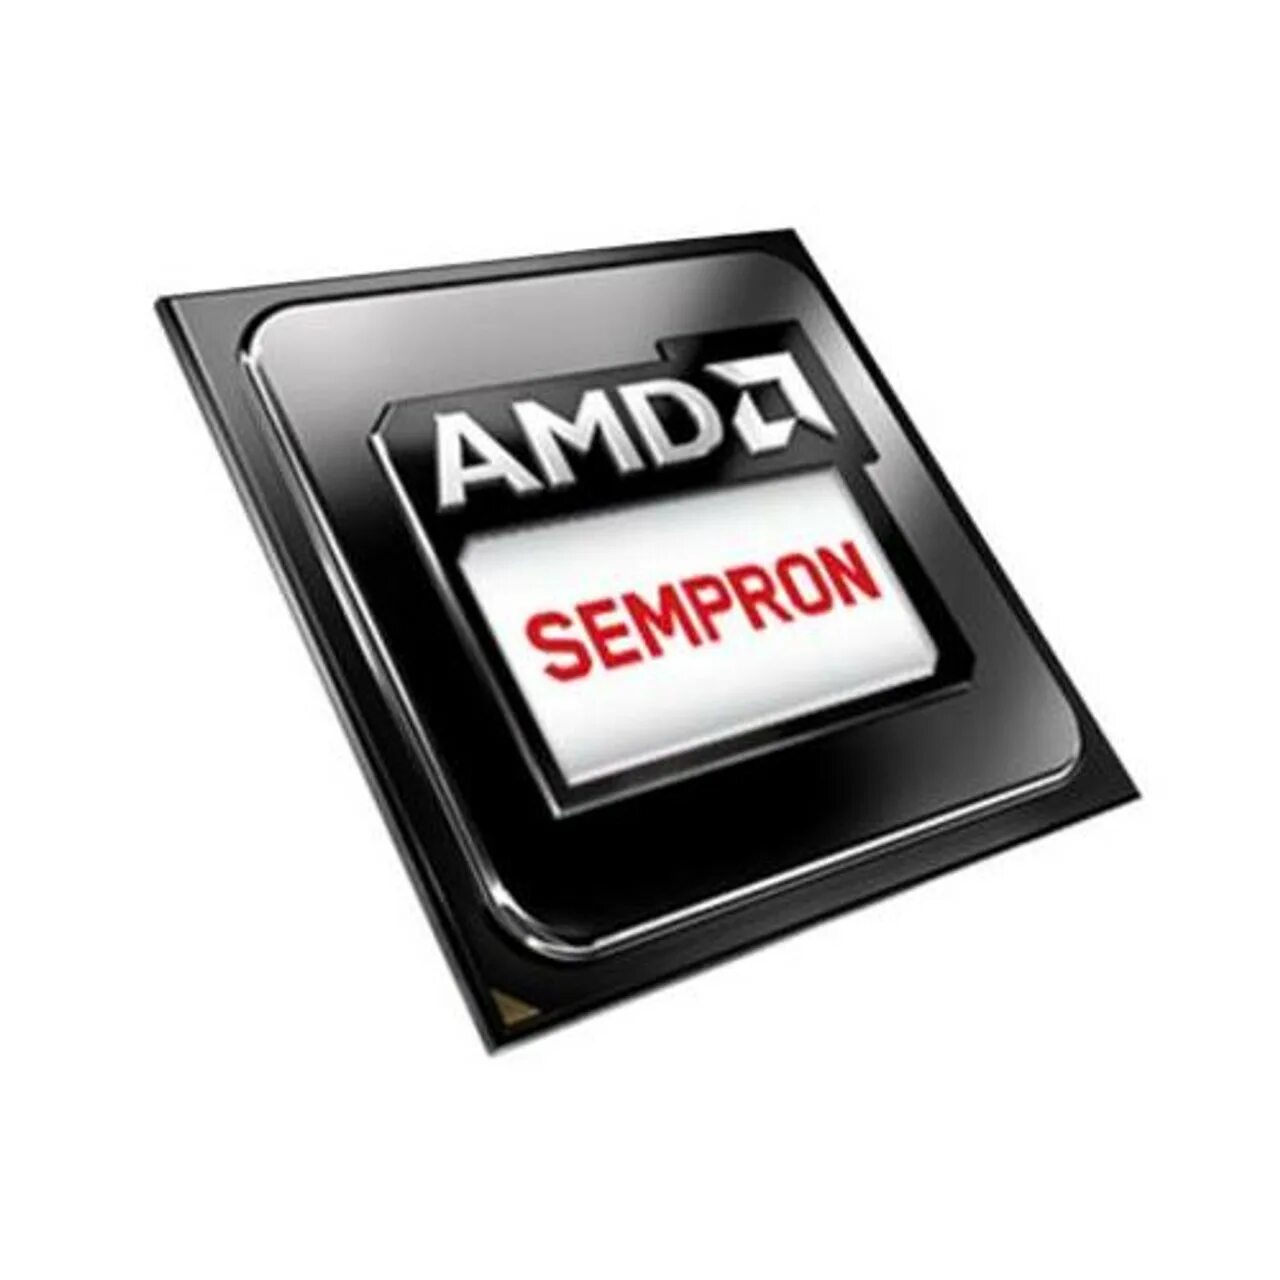 2650 сокет. Процессор AMD Sempron x2 240 fm2 sd240xoka23hj OEM fm2, 2 x 2800 МГЦ, OEM. Процессор AMD Sempron-x2 240 Trinity, 2c/2t, 2900mhz TDP-65w socketfm2 Tray (OEM). Процессор AMD Sempron 3850 kabini. Процессор AMD Sempron x2 250 (sd250xoka23hl) OEM - fm2.